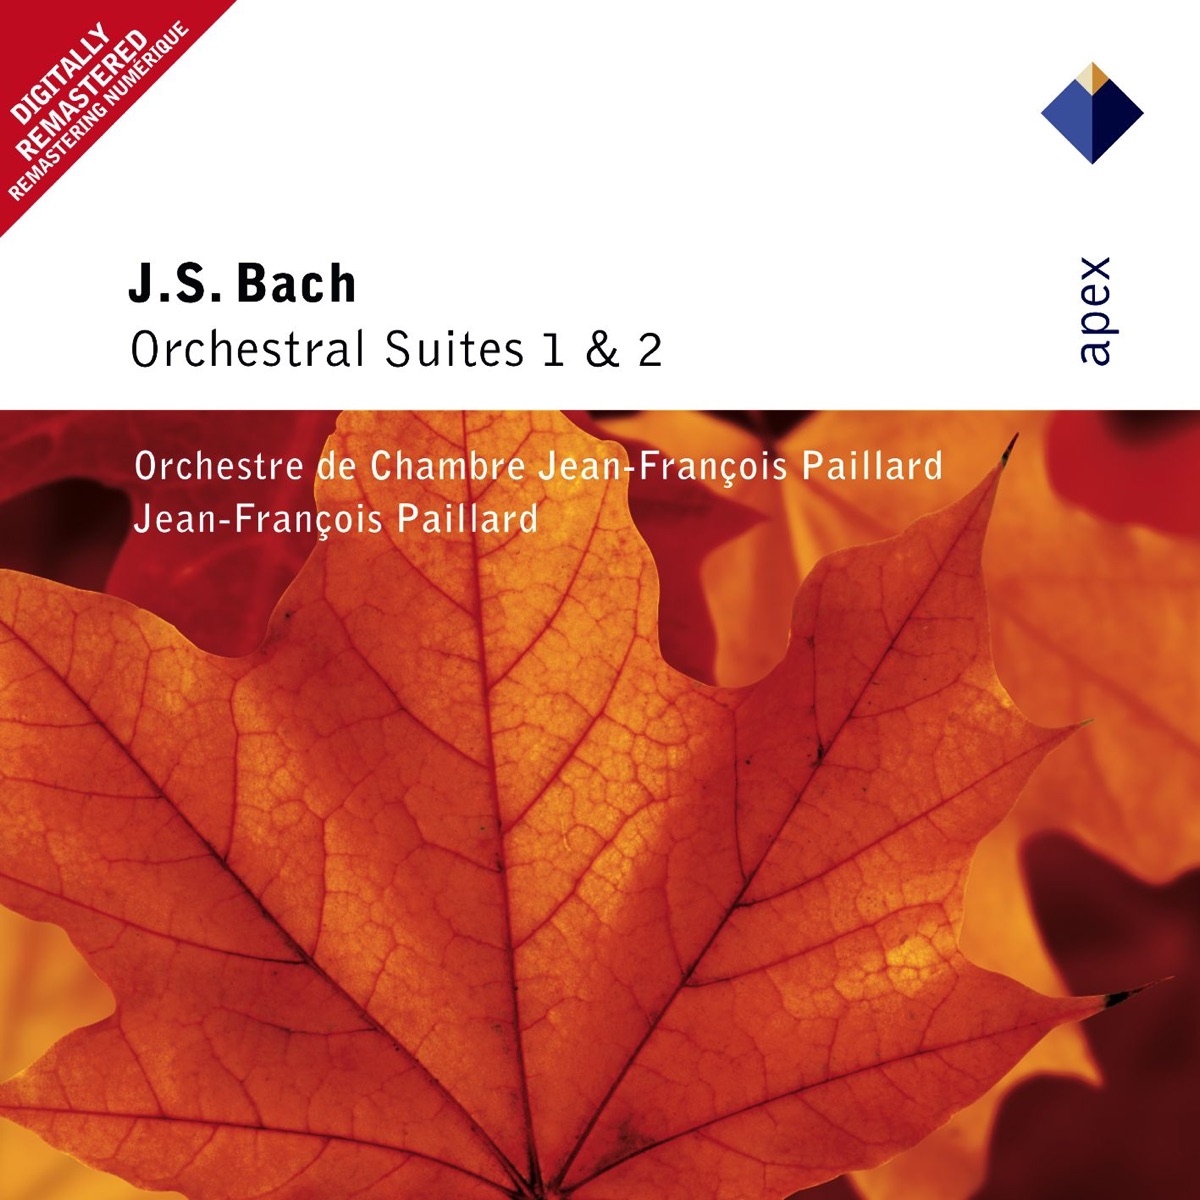 Bach: Concertos pour 3 et 4 pianos, BWV 1063, 1064 & 1065 - Album by  Jean-François Paillard, Anne Queffélec, Michel Dalberto & Pascal Devoyon -  Apple Music